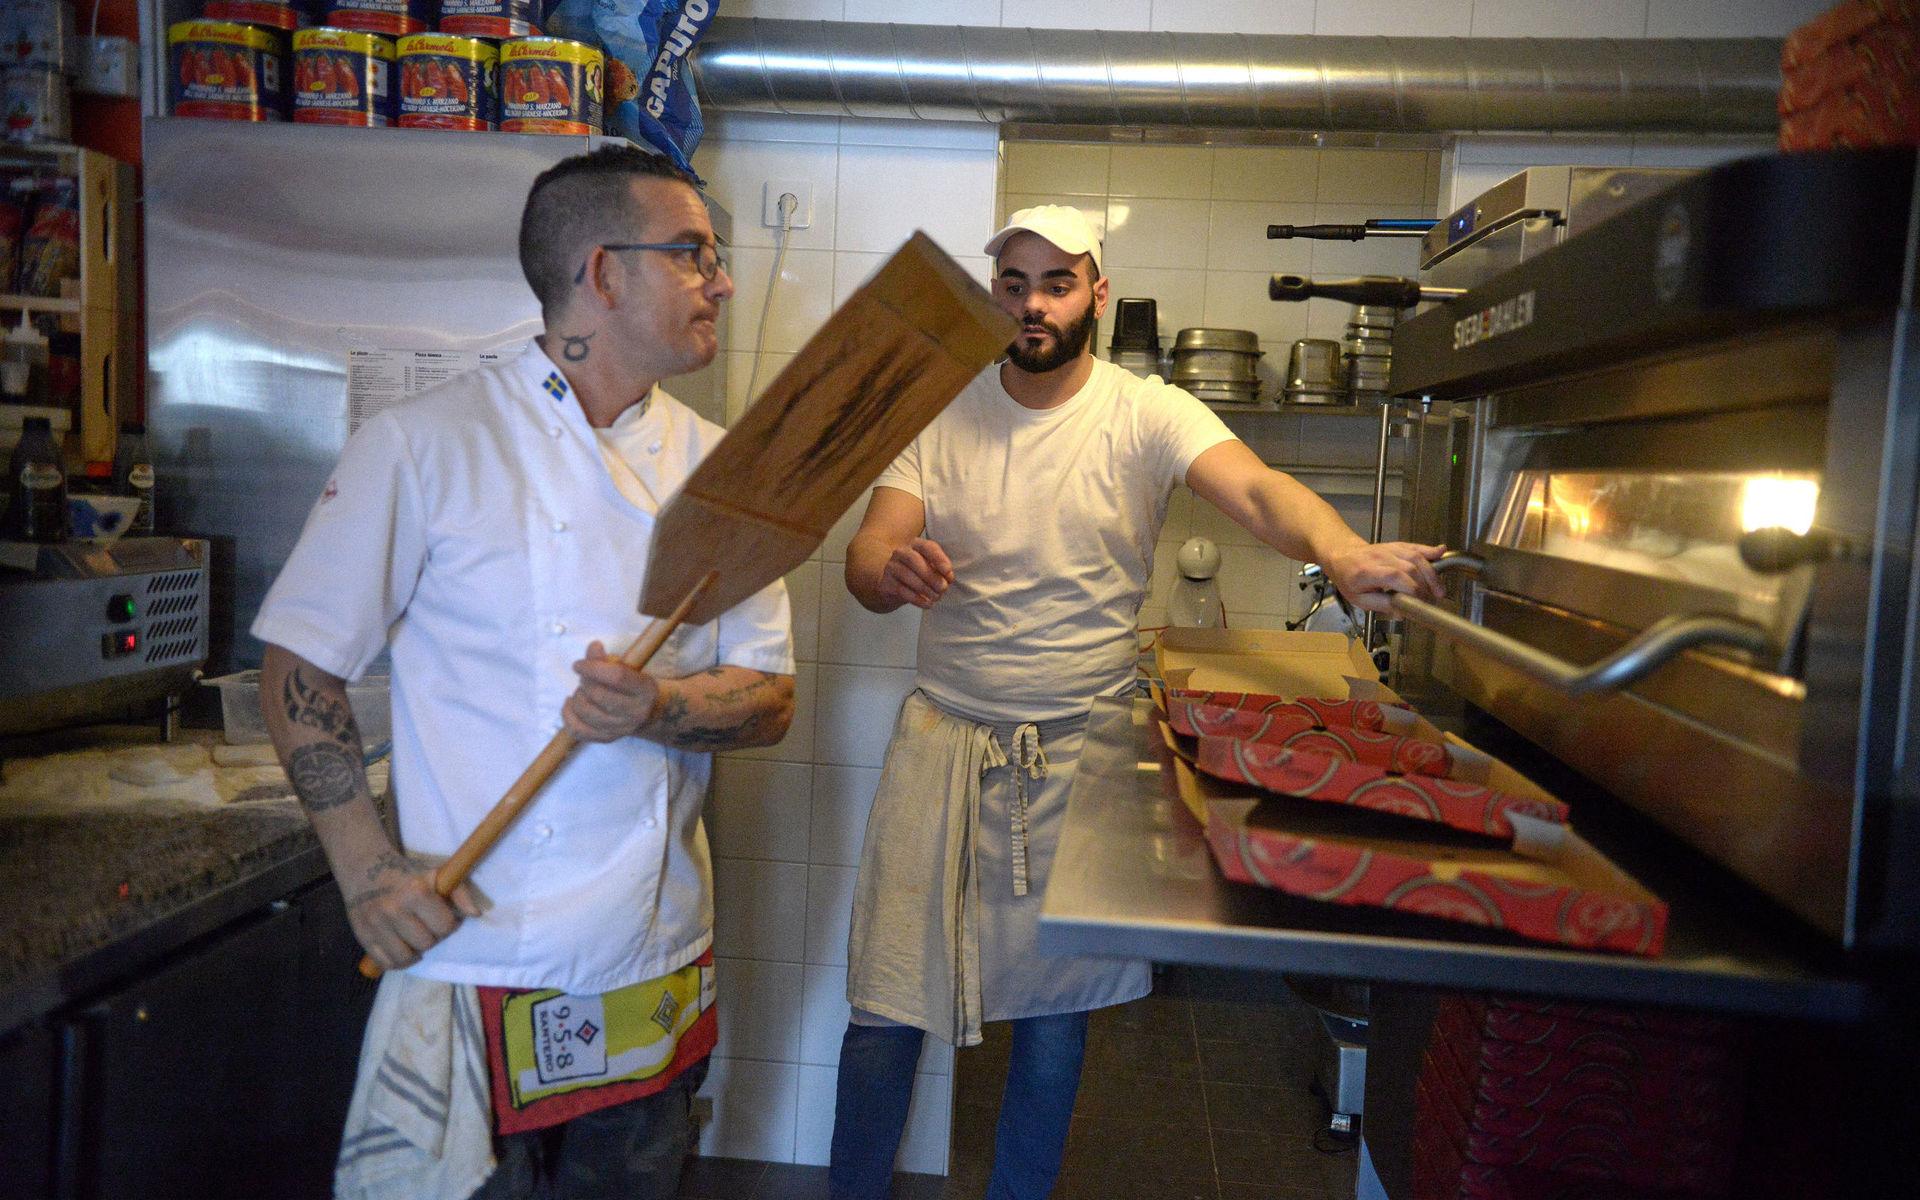 Francesco Sabatino kommer också från Italien och är liksom Riccardo en utmärkt pizzabagare.  